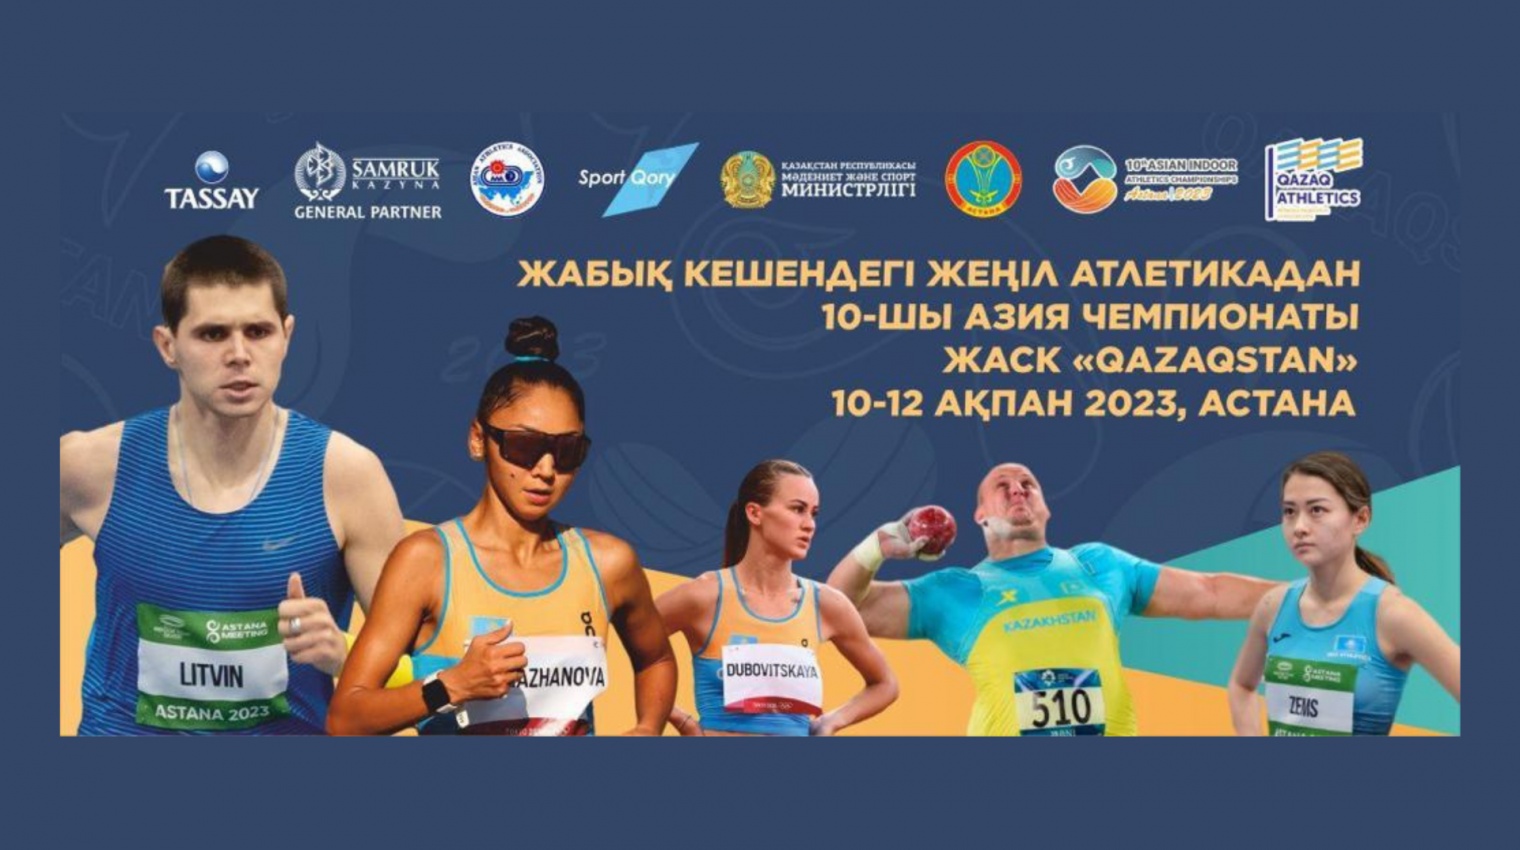 С 10 по 12 февраля 2023 года столица Казахстана примет 10-й Чемпионат Азии по легкой атлетике в закрытых помещениях. В масштабном мероприятии примут участие более 500 спортсменов.